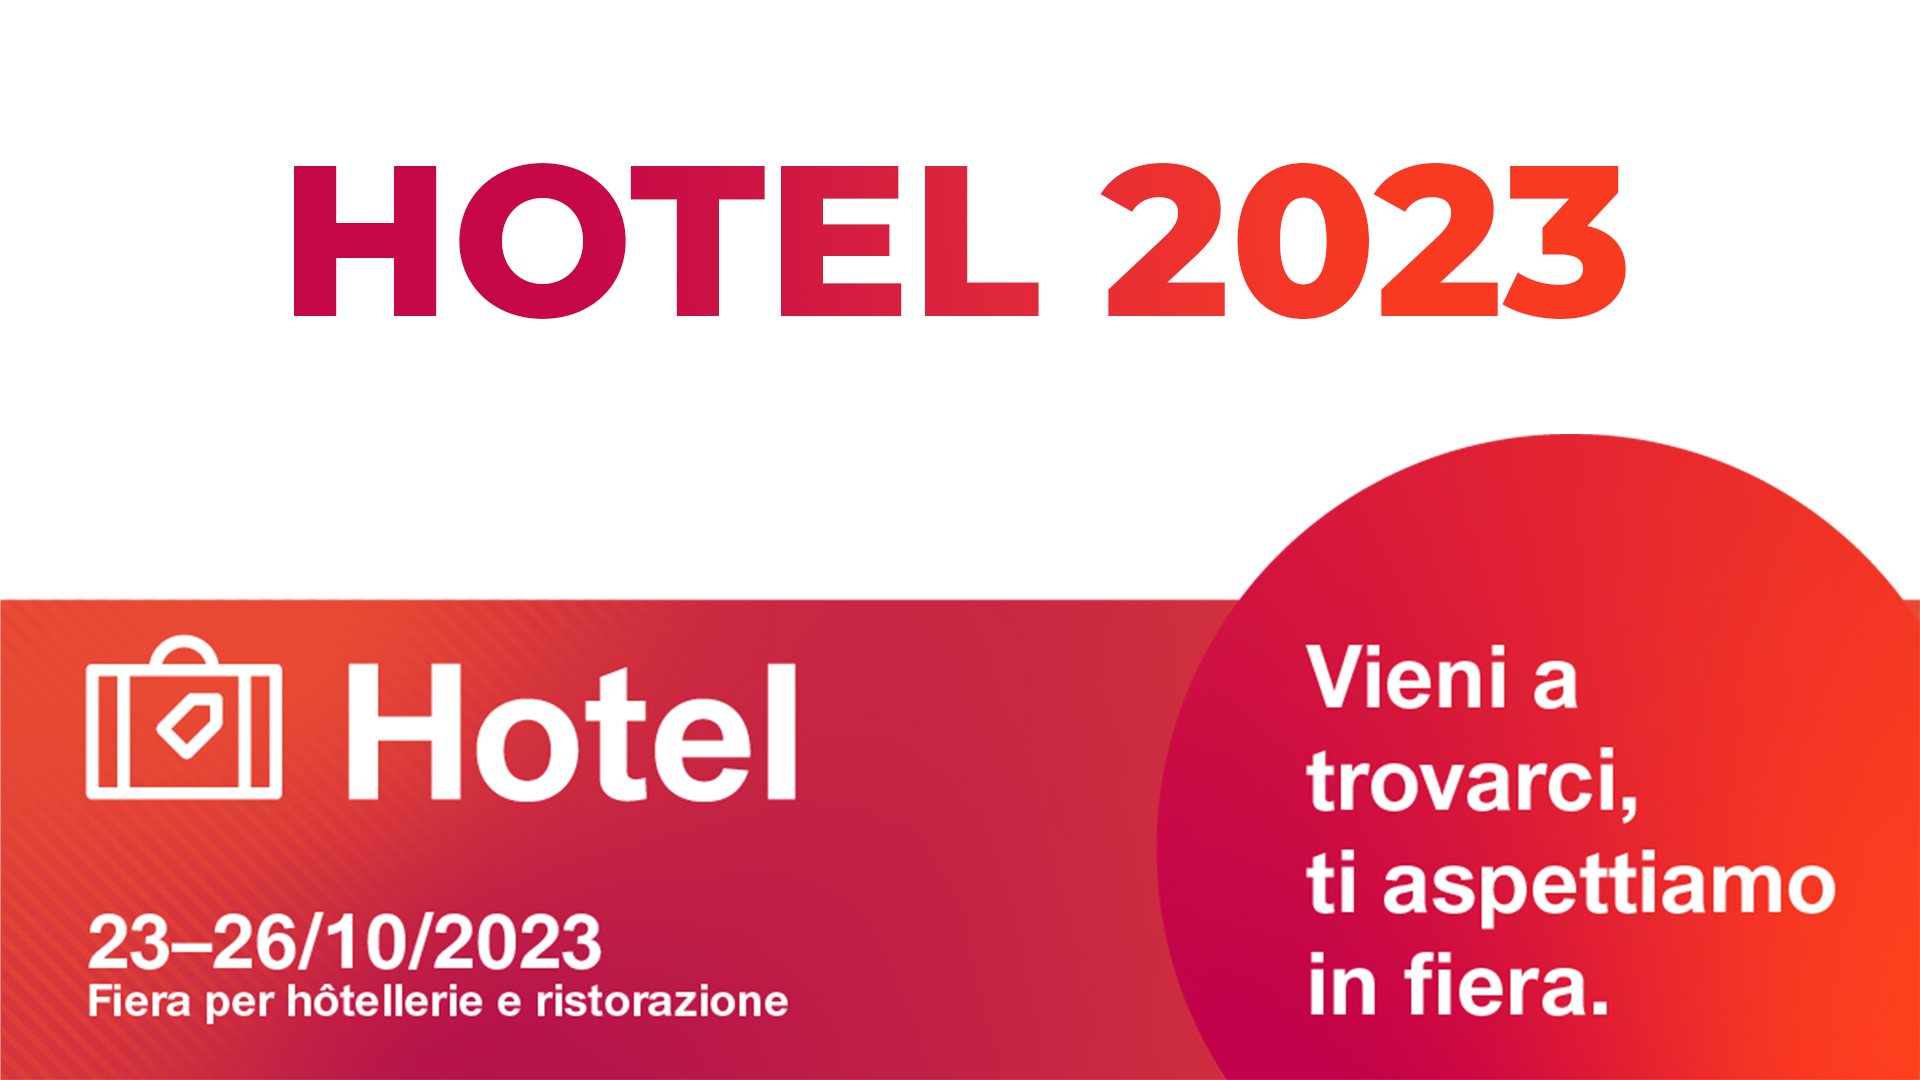 Pregis – Hotel 2023